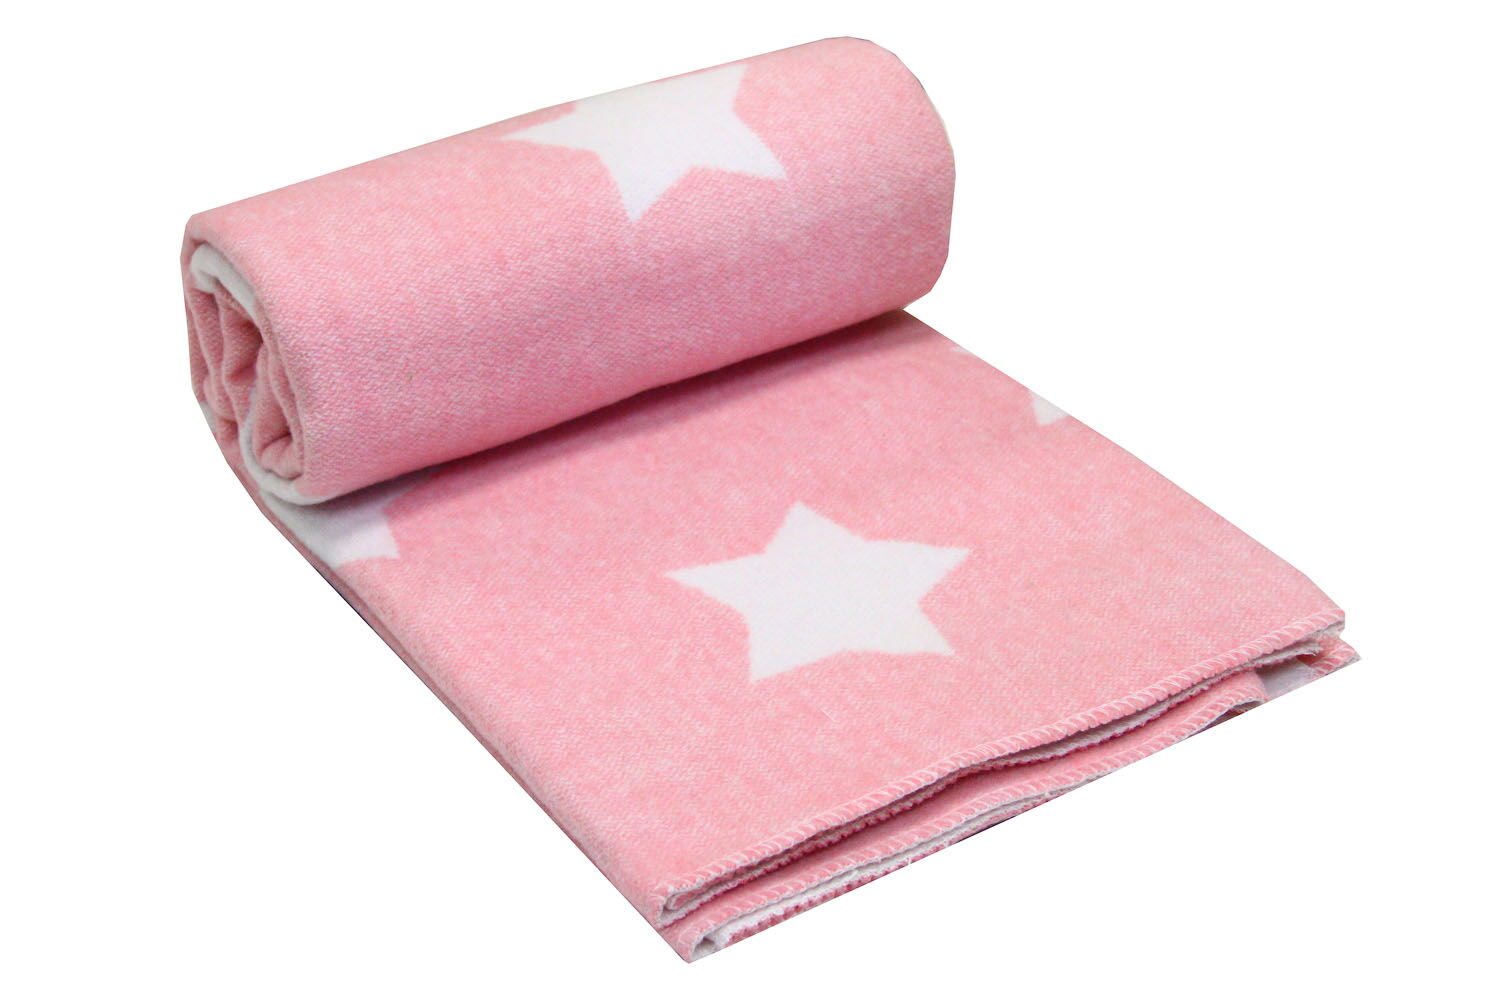 Одеяло-плед детское Vladi Звезды розовый 100*140 - фото